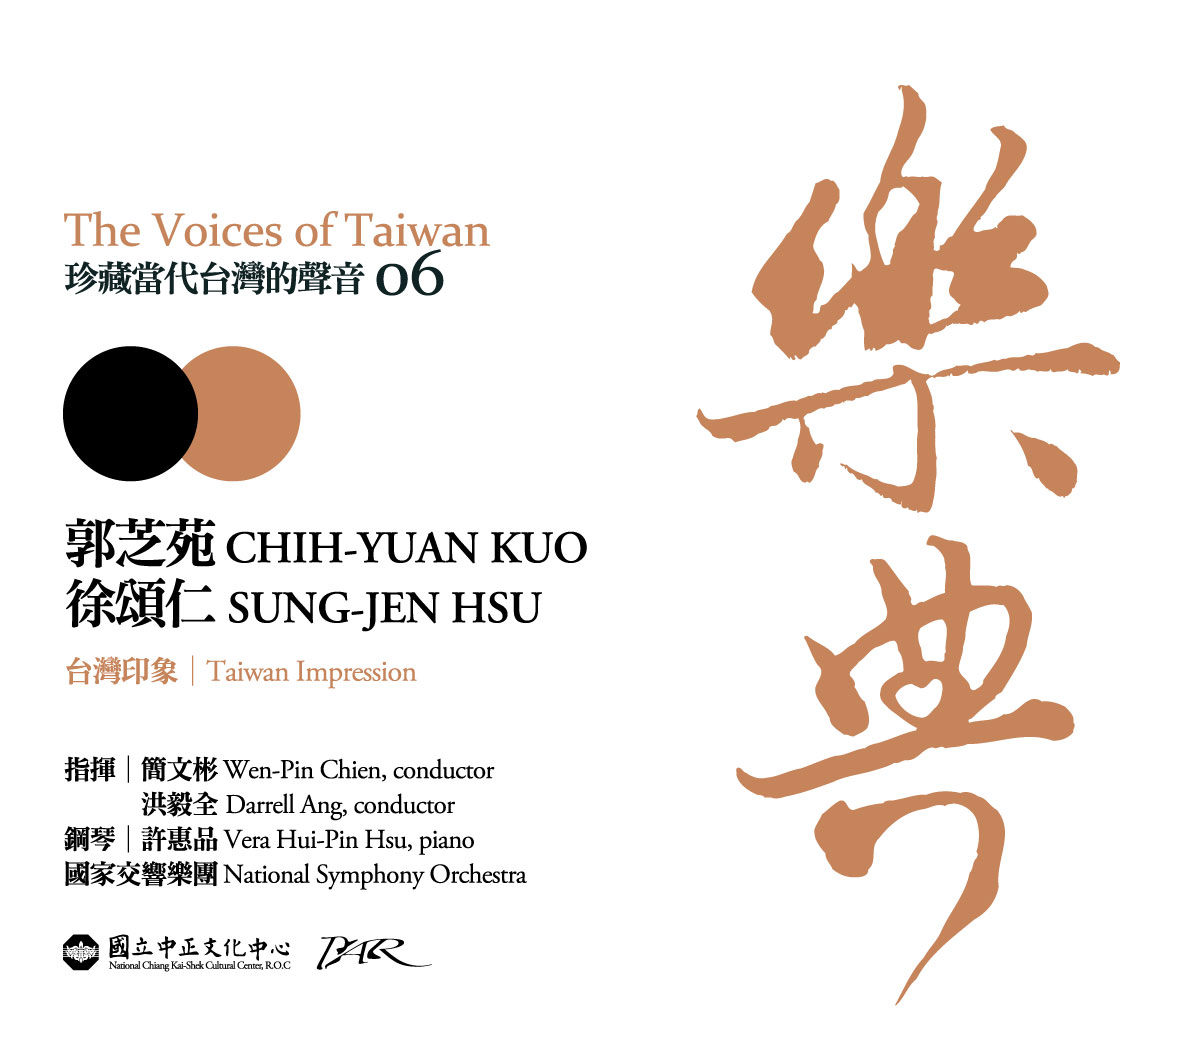 樂典--珍藏台灣的聲音 The Voices of Taiwan郭芝苑、徐頌仁